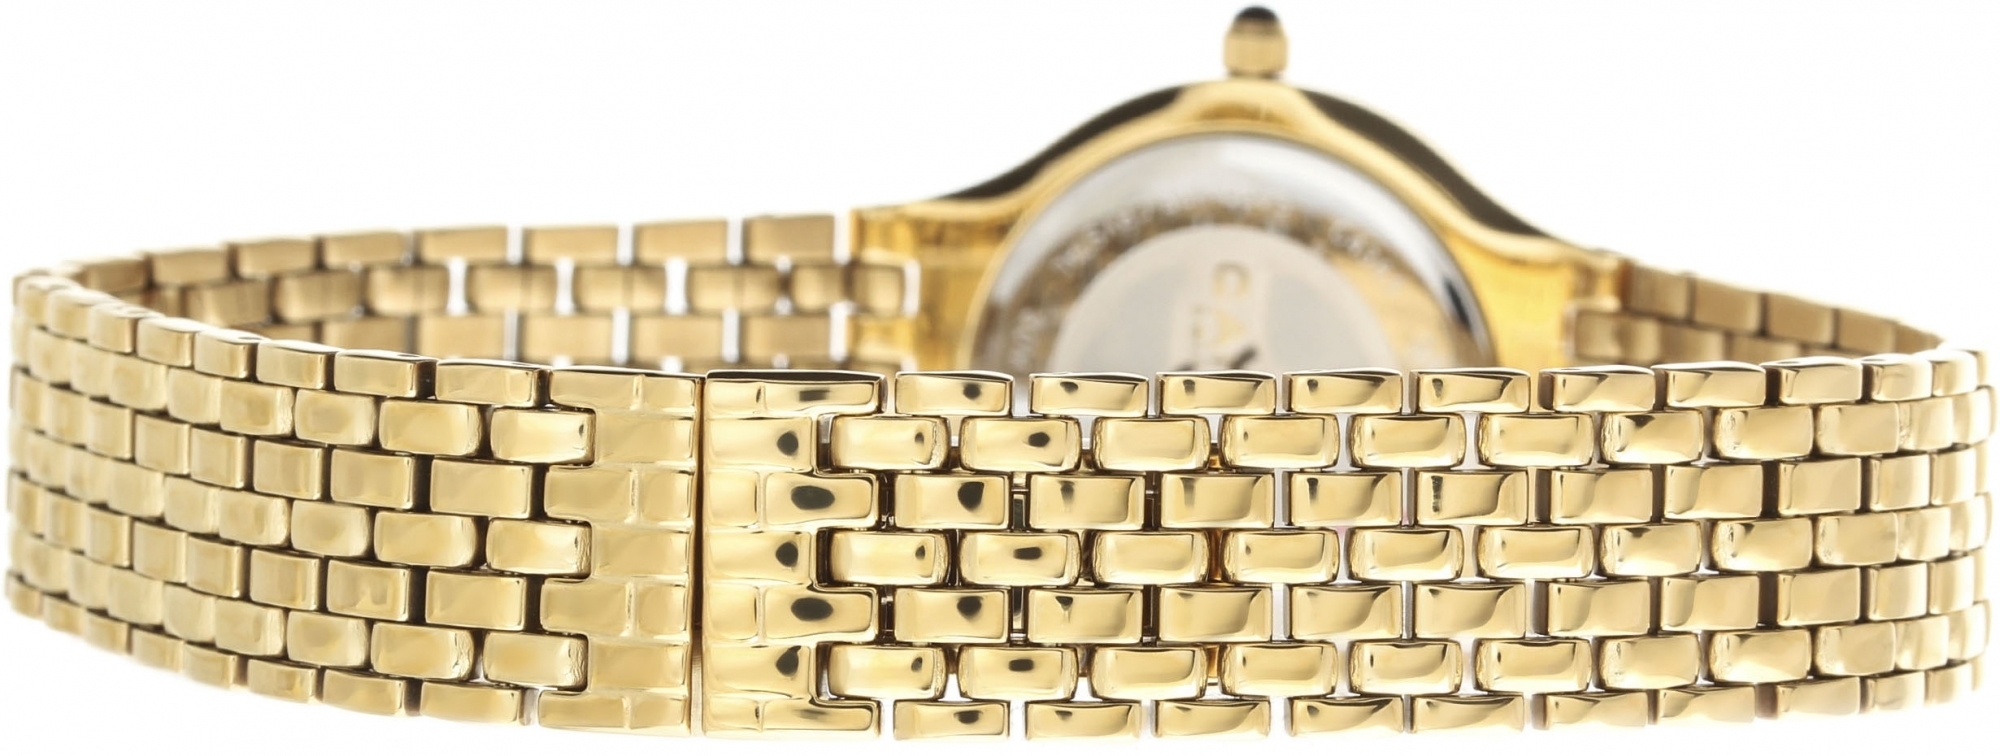 Швейцарские наручные часы Candino: элегантность и точность в каждой детали